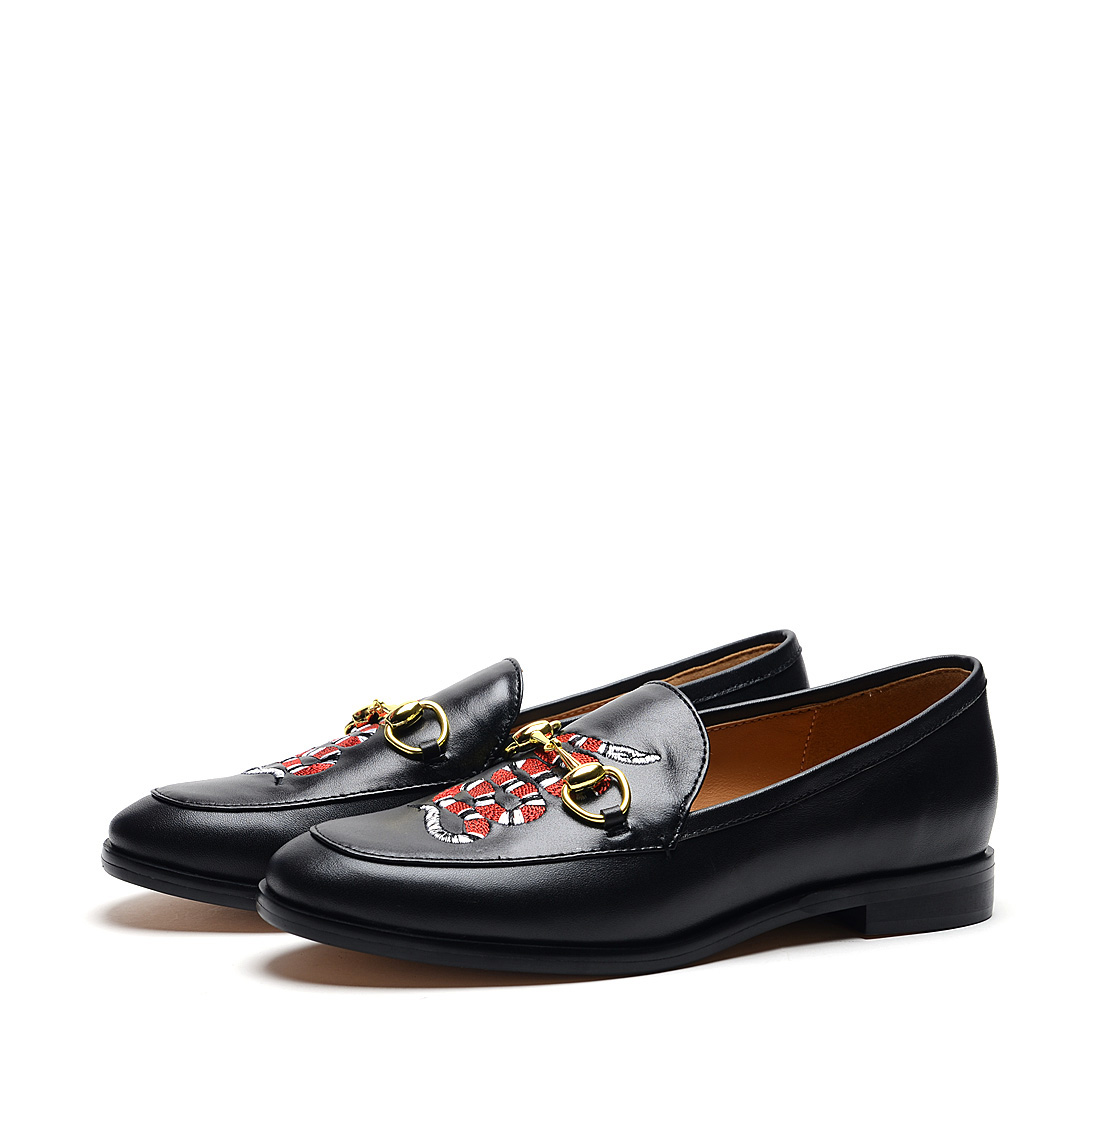 [RedLoafer]商务风金属装饰头层牛皮革单鞋(尺码标准)
编号:A3372D1A76